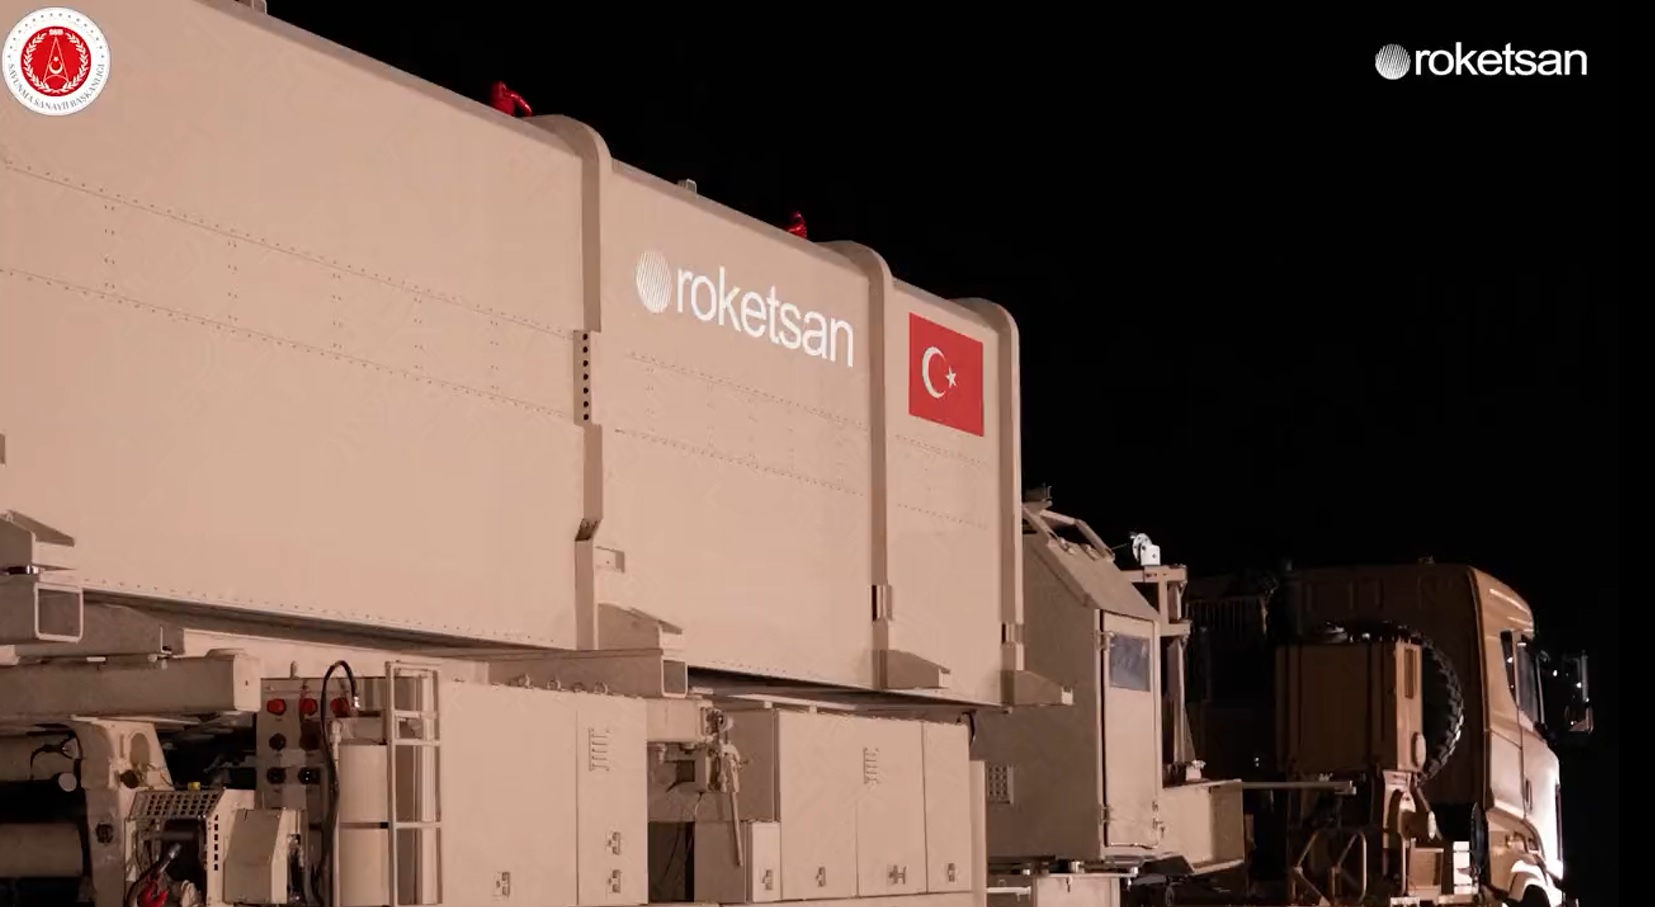 Roketsan presenta il CENK, il primo missile balistico a medio raggio della Turchia in grado di colpire obiettivi fino a 1.000 km di distanza